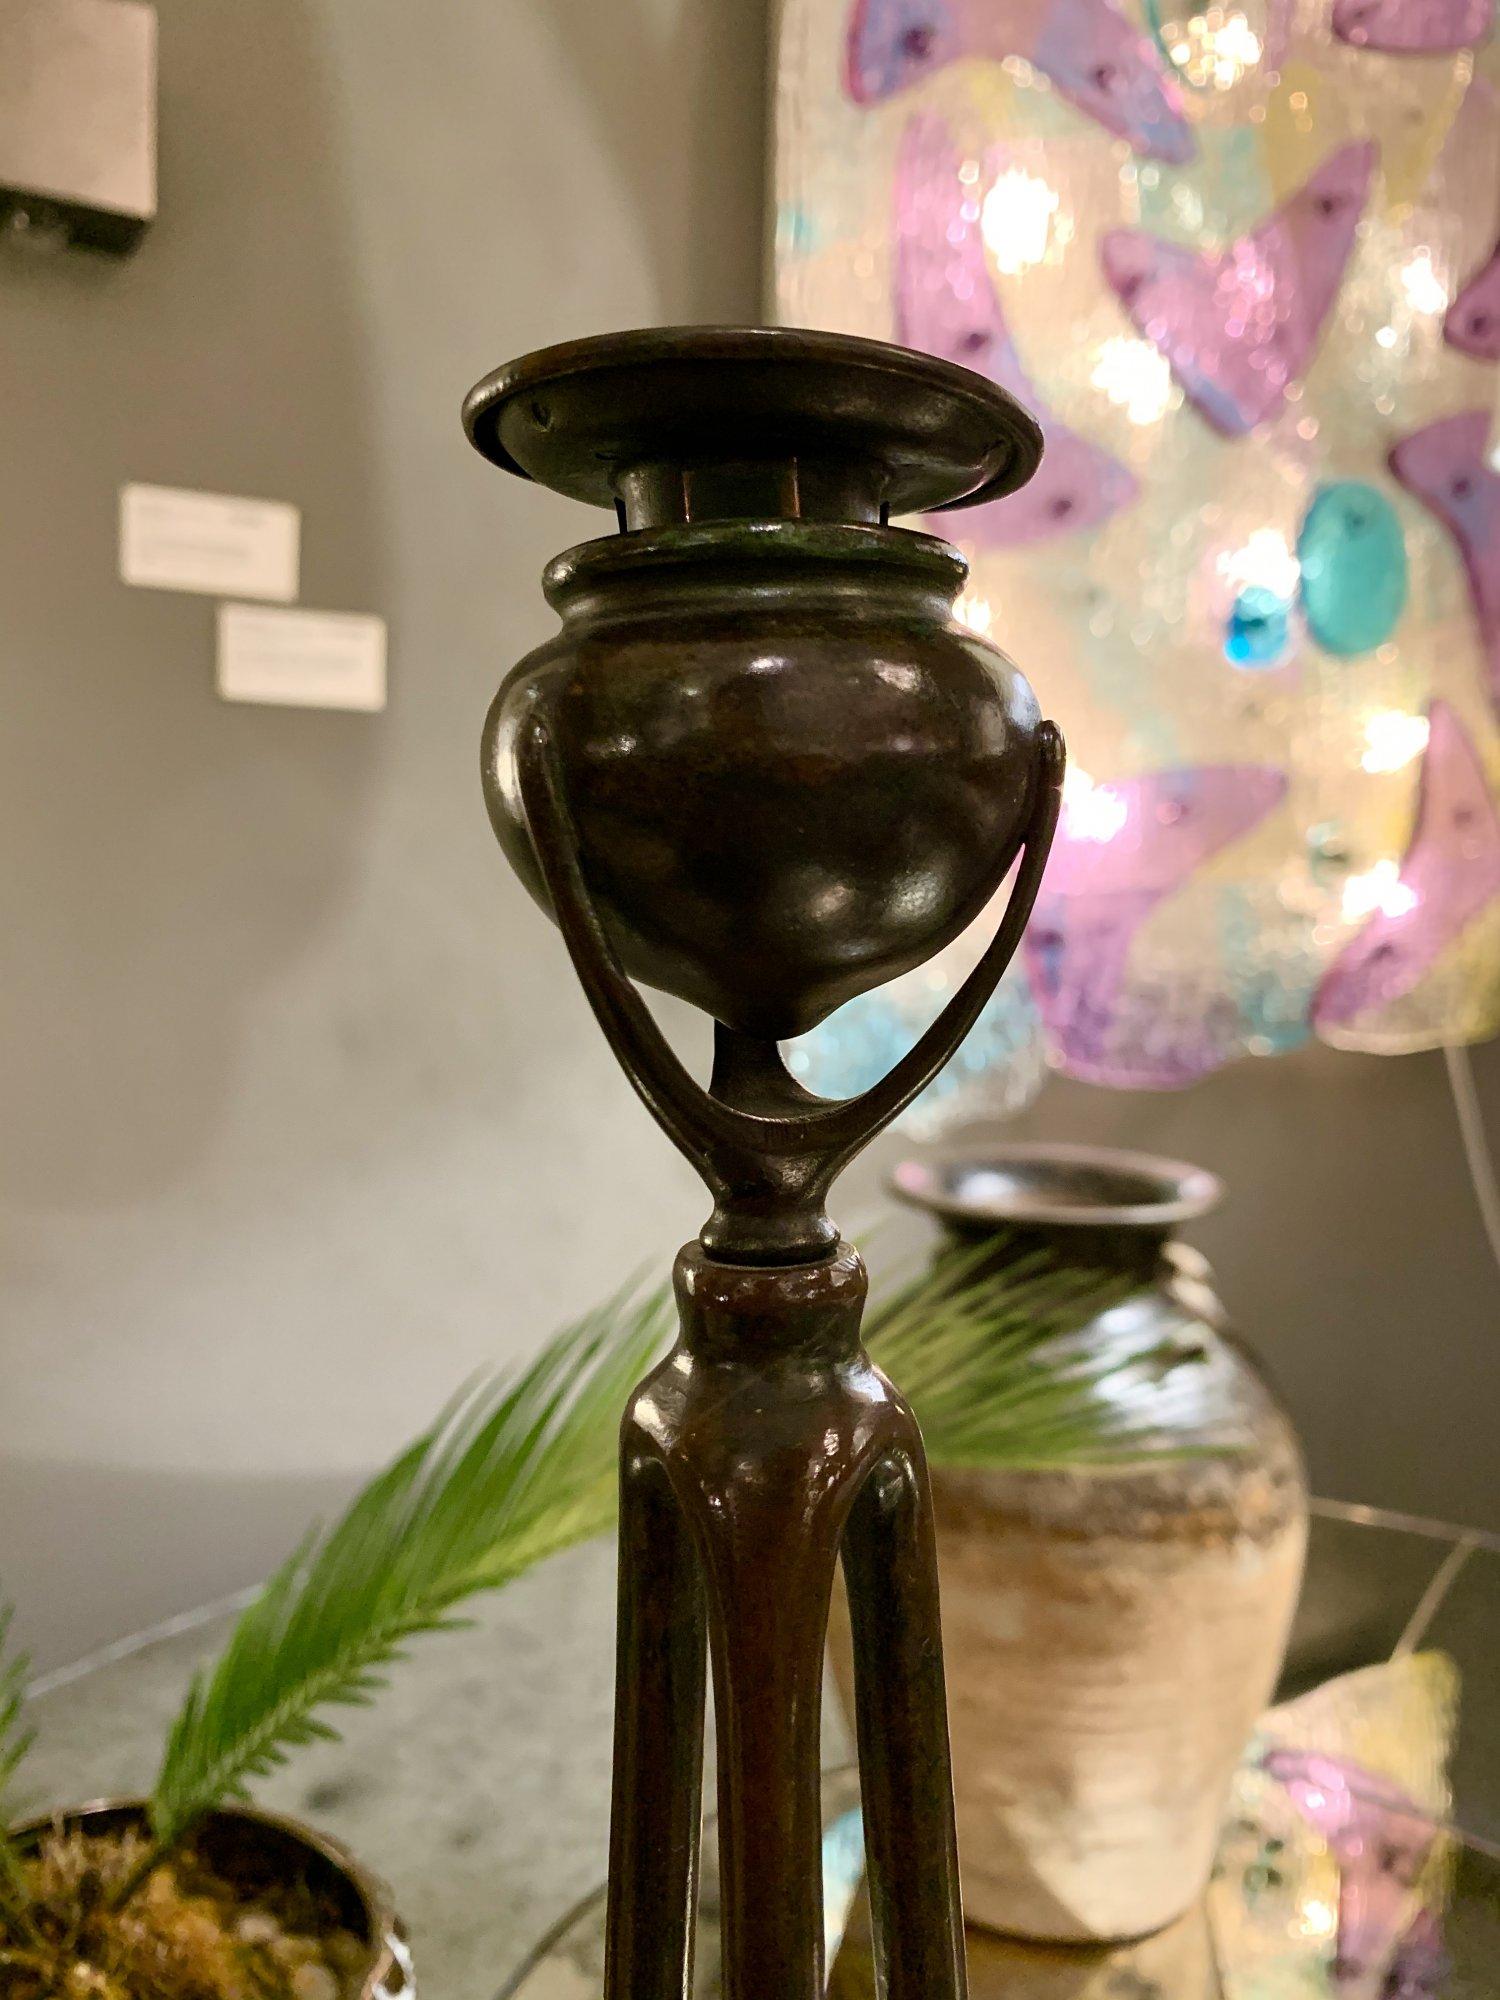 Patinierte Bronze mit Verdigris-Passagen, bestehend aus drei Streben, die einen vasenförmigen Halter tragen und den originalen bronzenen Snuffer umgeben. Auf der Unterseite gestempelt Tiffany Studios NEW YORK 10057.


